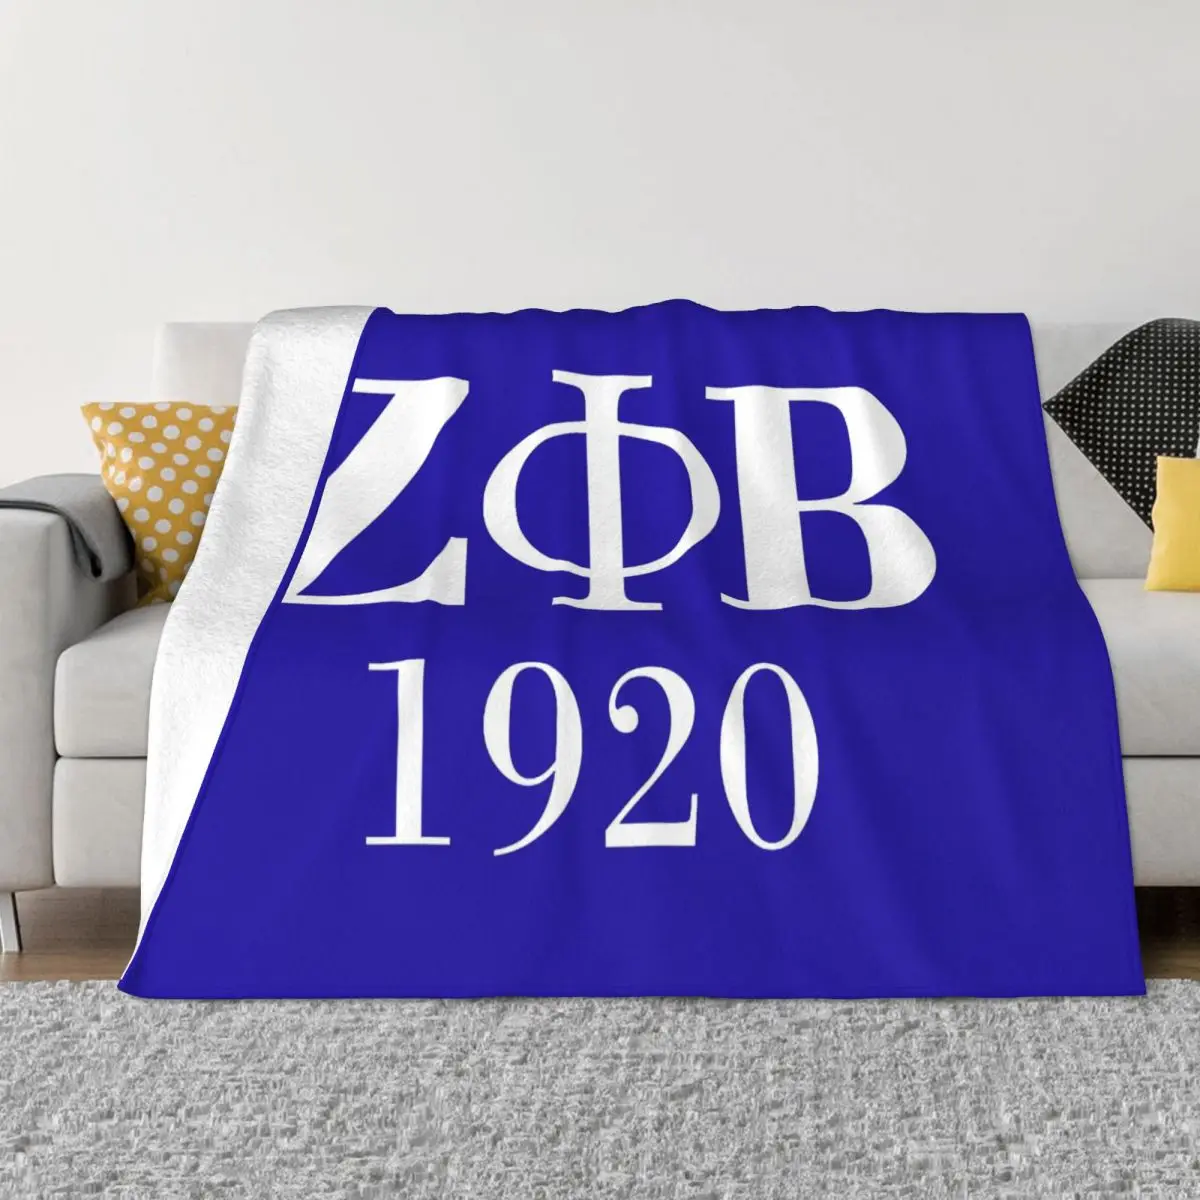 Zeta Phi Beta Sorority Logo Blanket Soft Fleece Warm Flannel Greek Letter 1920 Throw Blankets for Sofa Outdoor Bedroom Bedspread